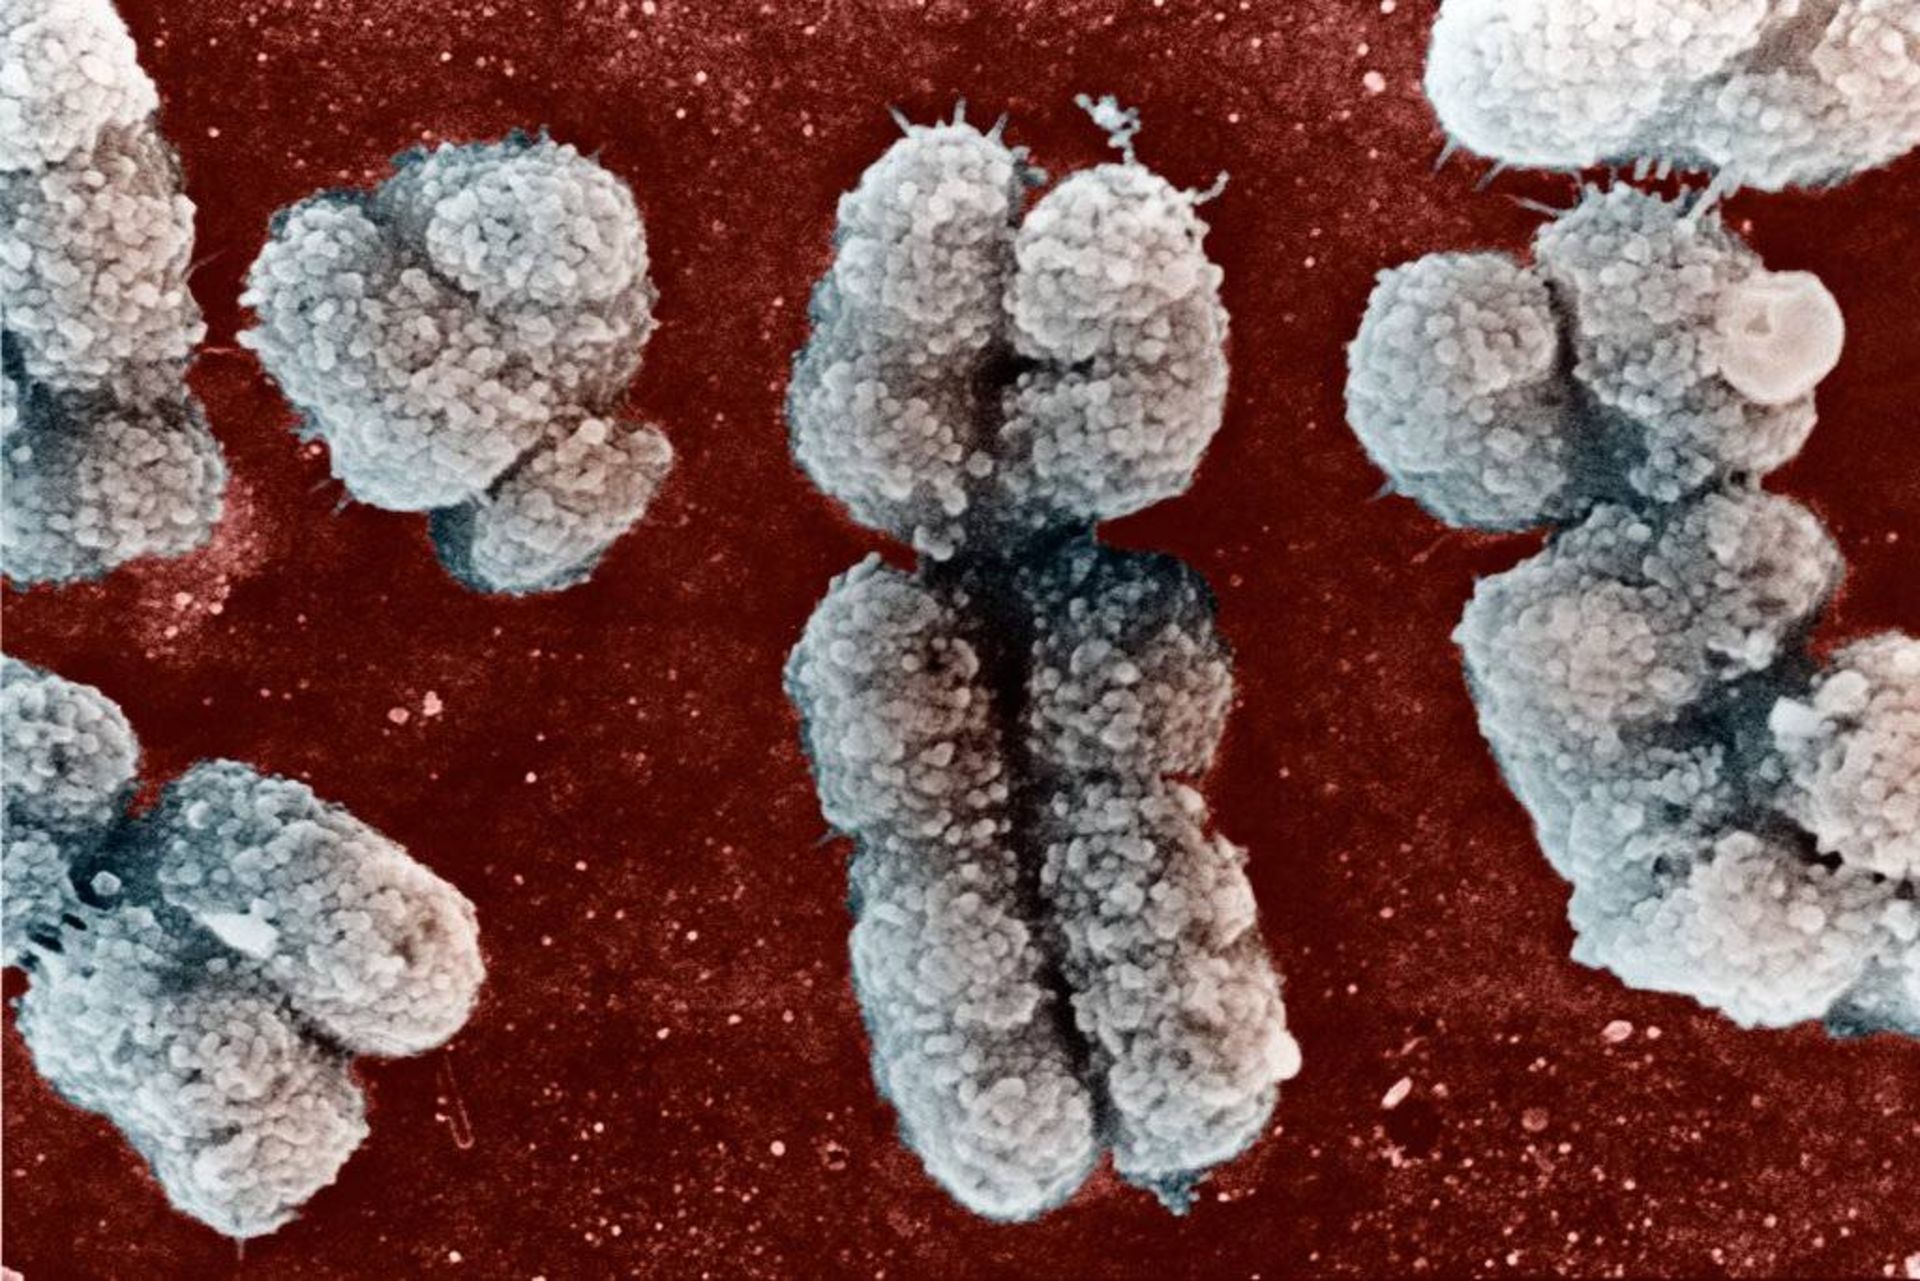 میکروگراف کروموزوم های انسان / micrograph of human chromosomes